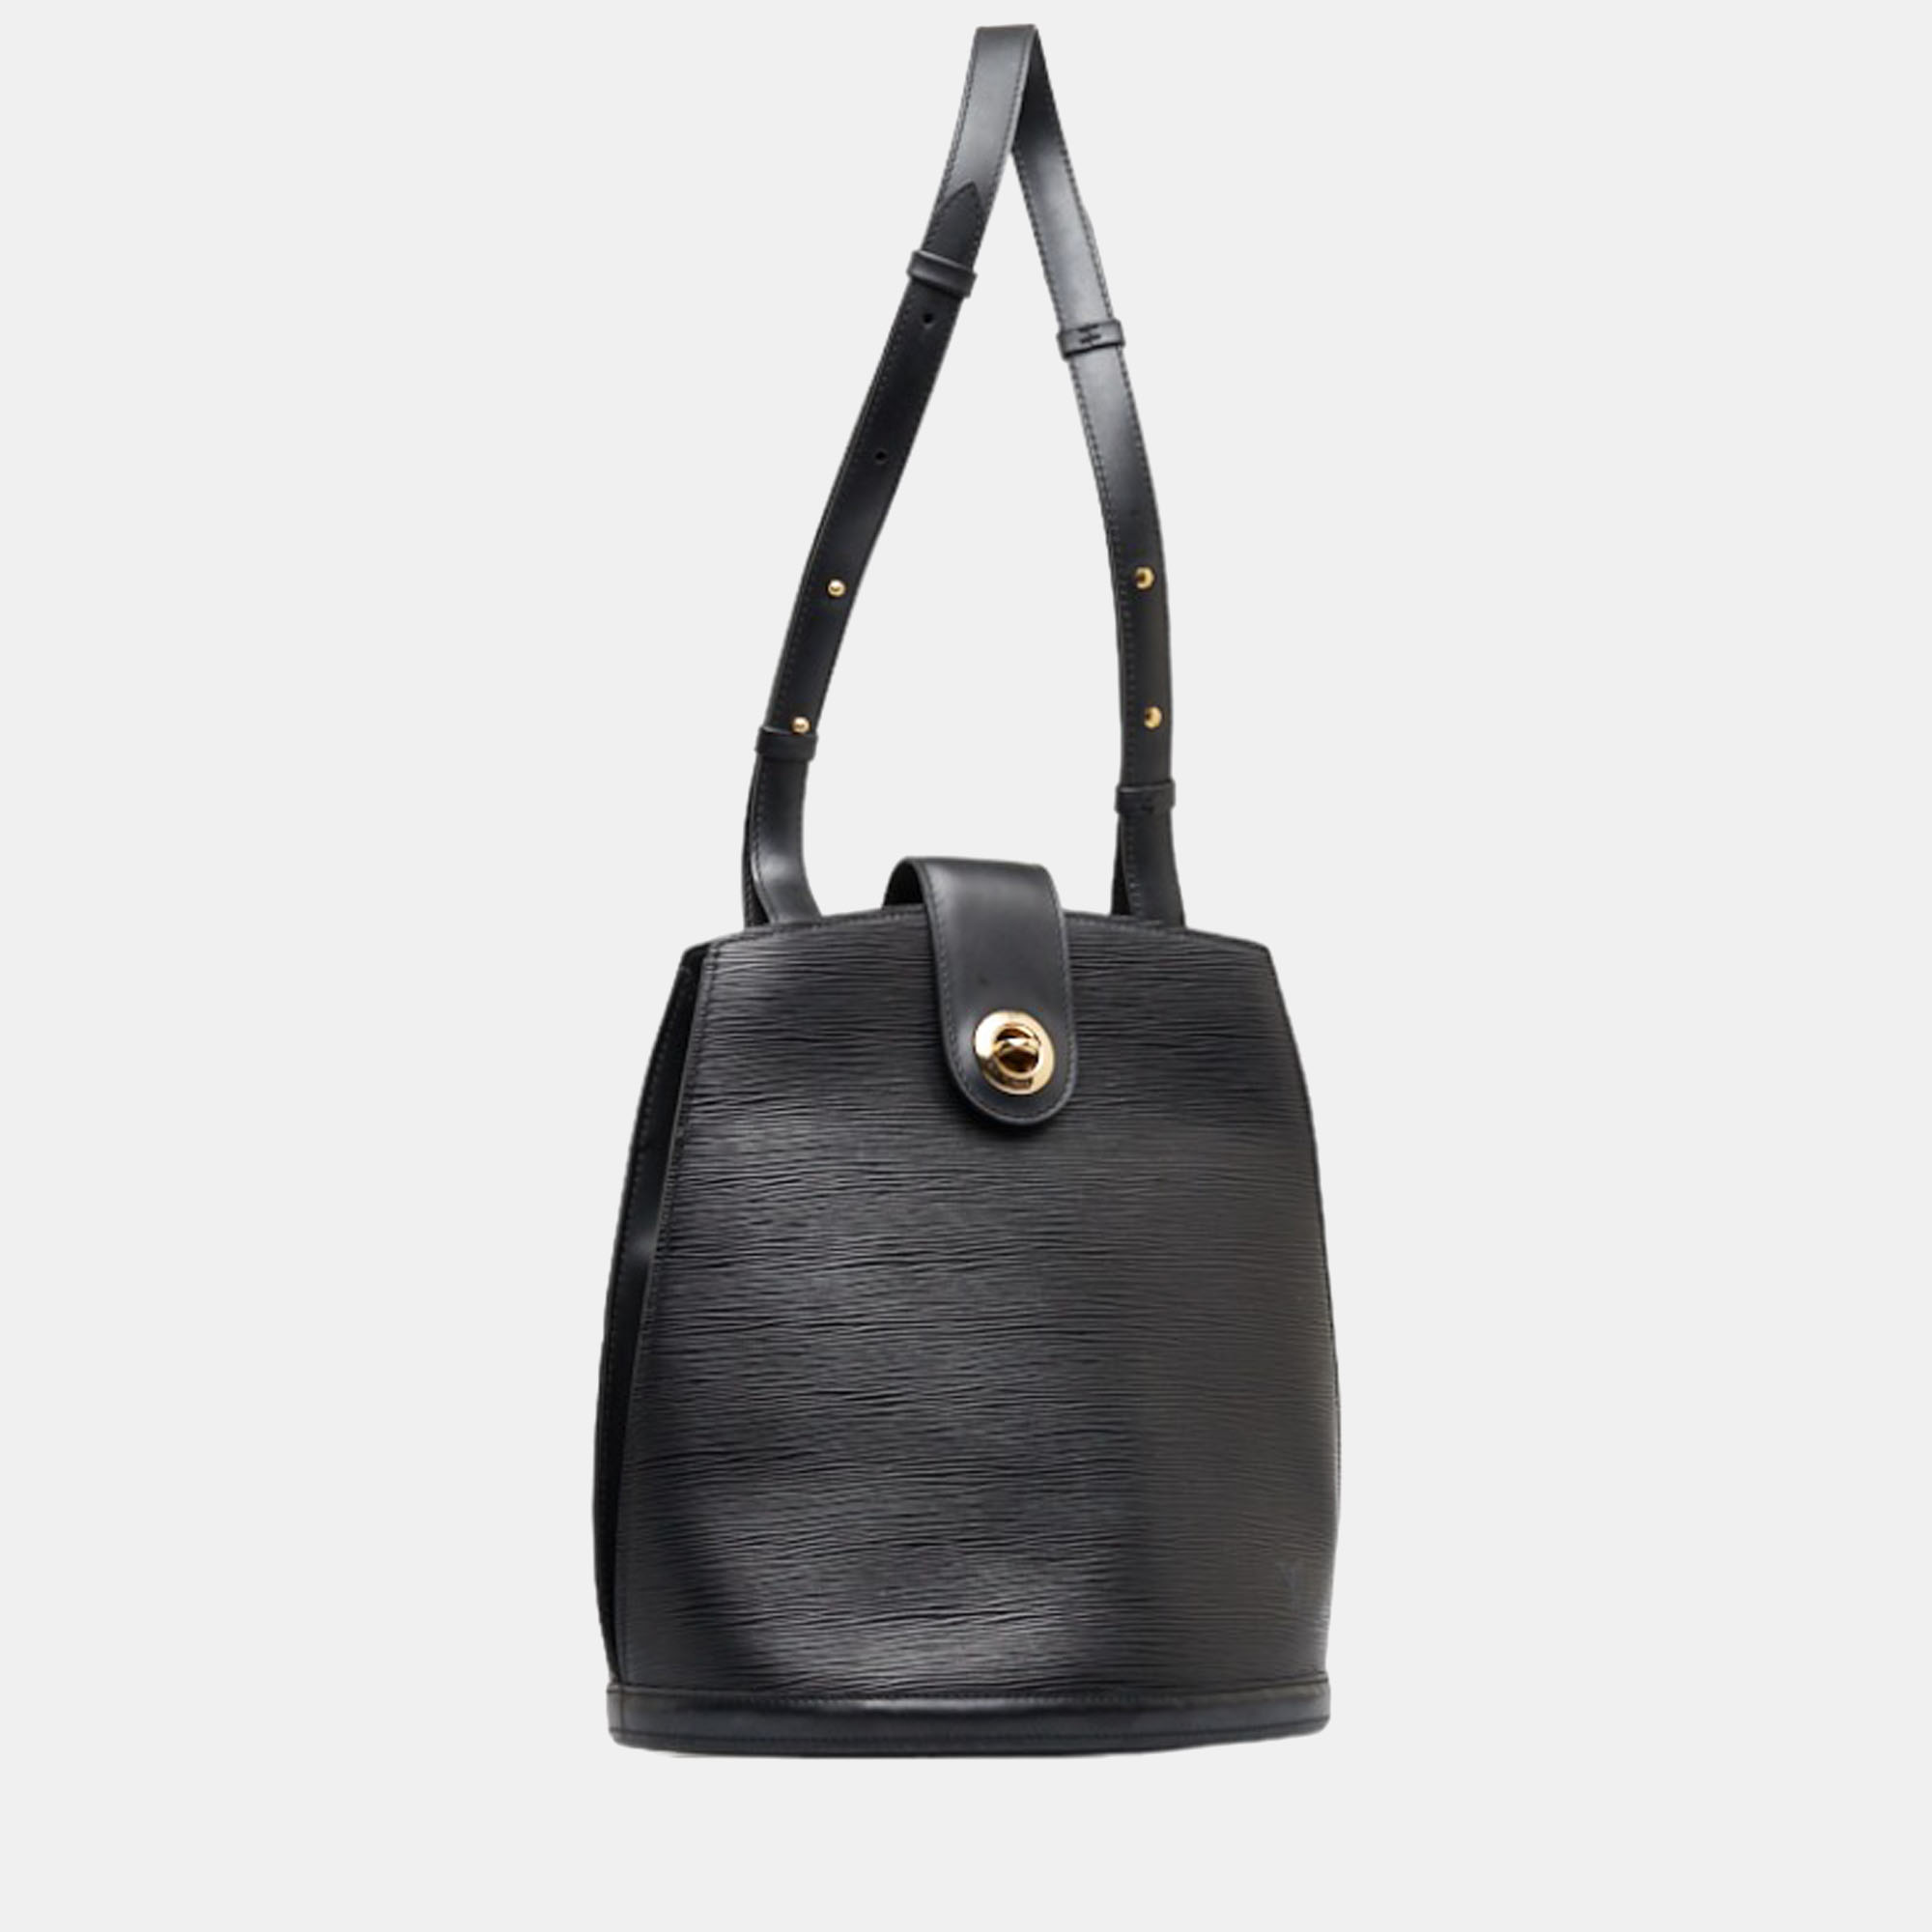 Louis Vuitton Epi Cluny Bag - Brown Bucket Bags, Handbags